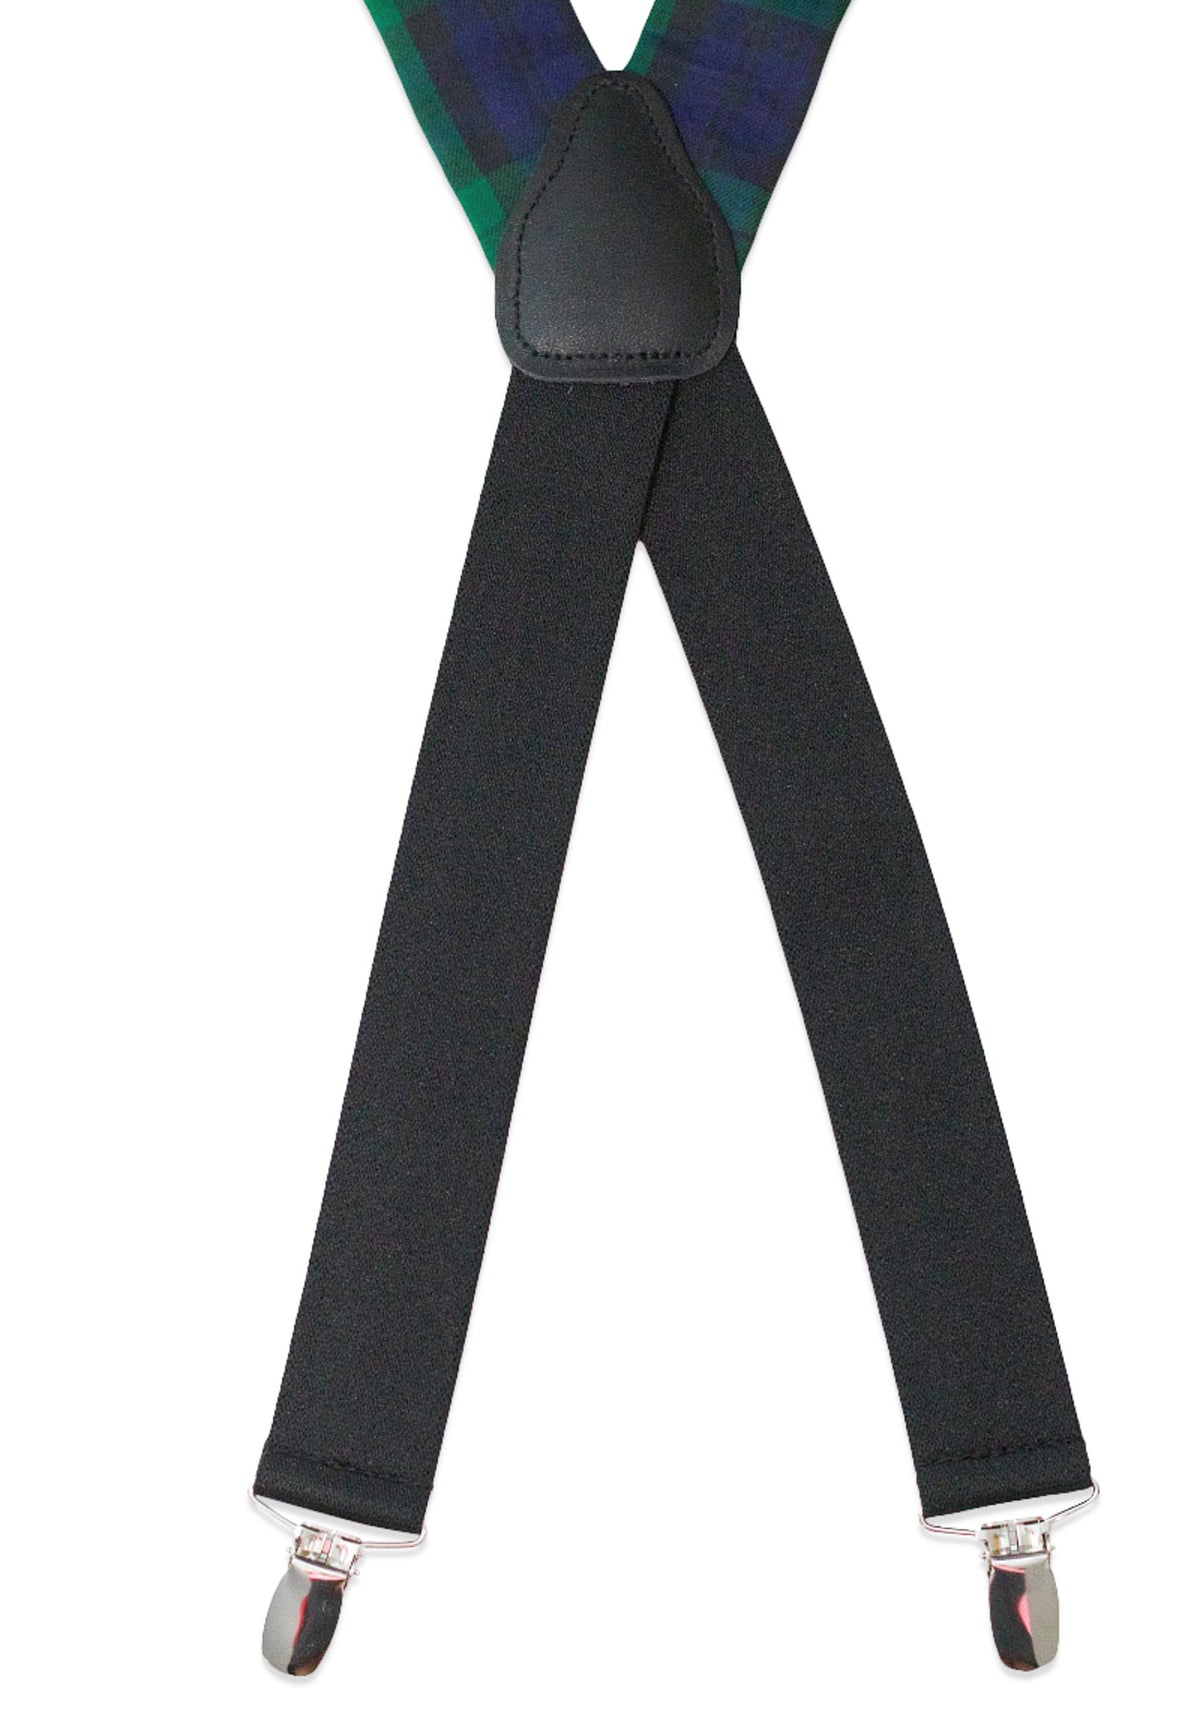 Black Watch Tartan Suspenders